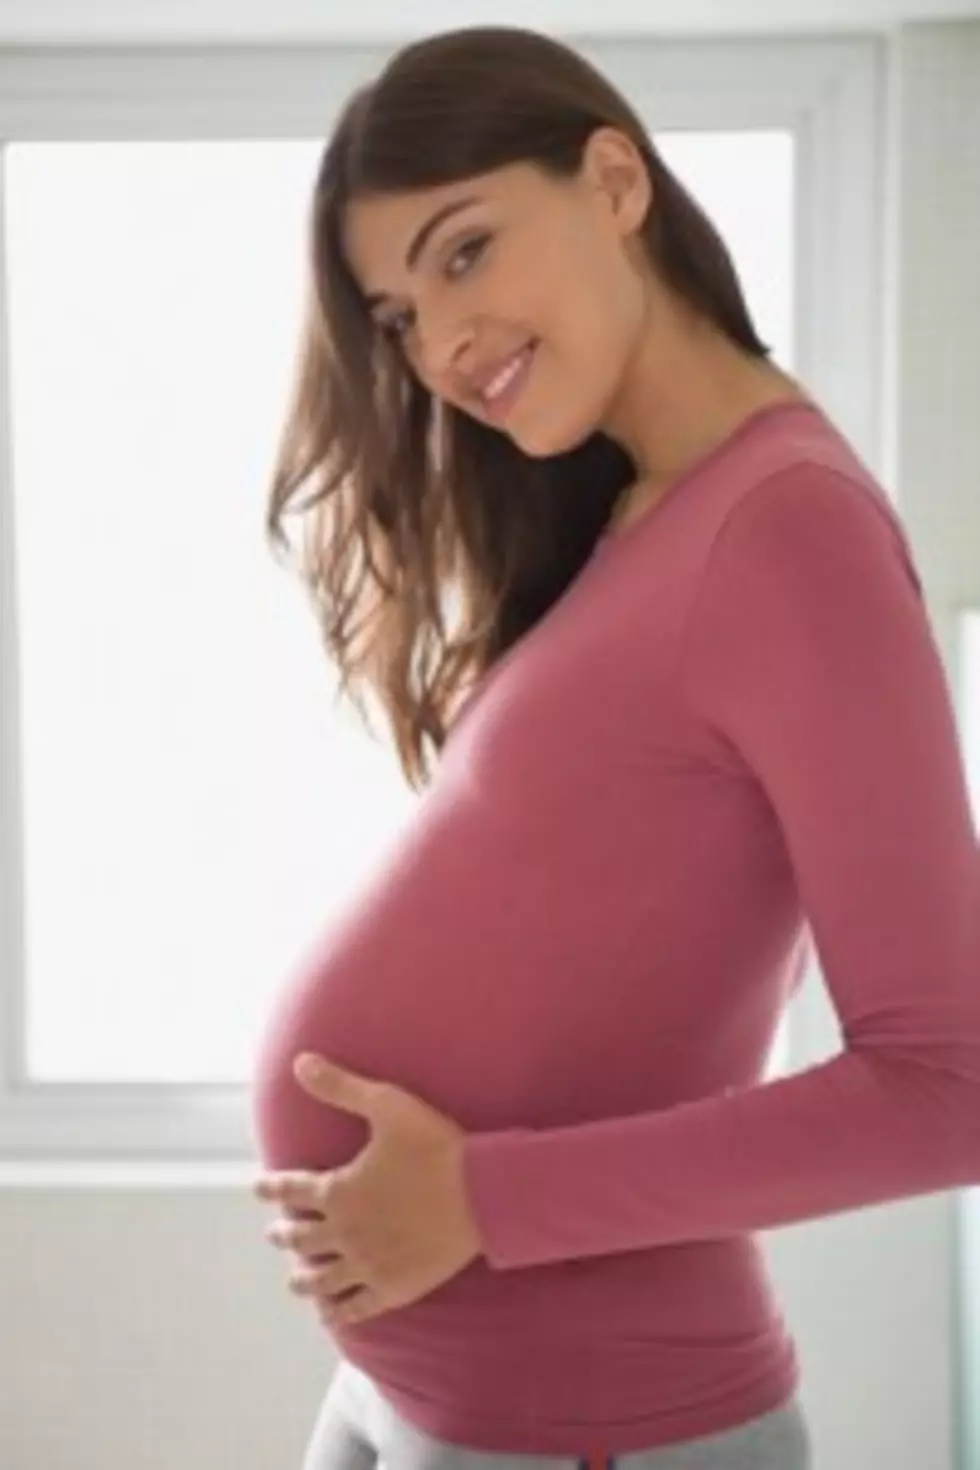 Are Pregnant Women Sexy